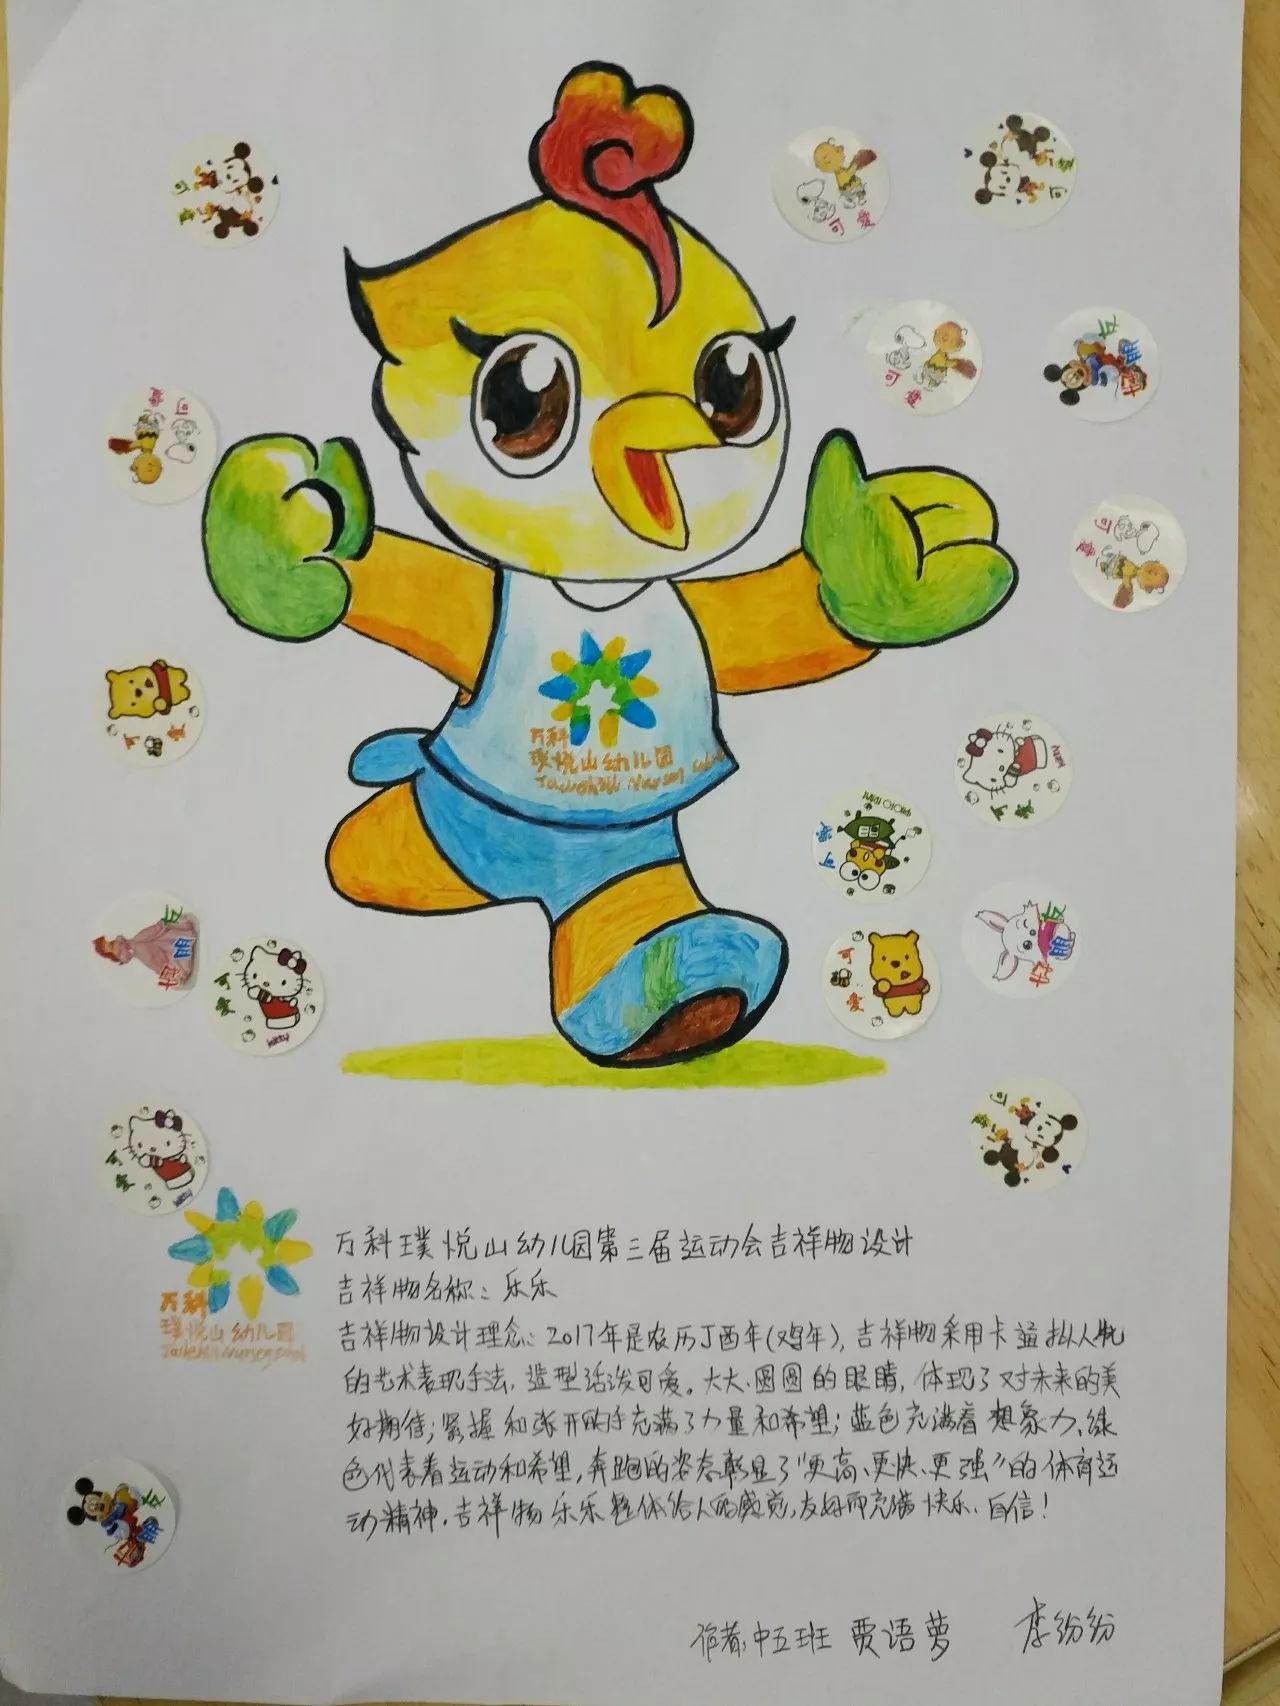 【万科璞悦山幼儿园】第三届冬季运动会吉祥物乐乐诞生啦!